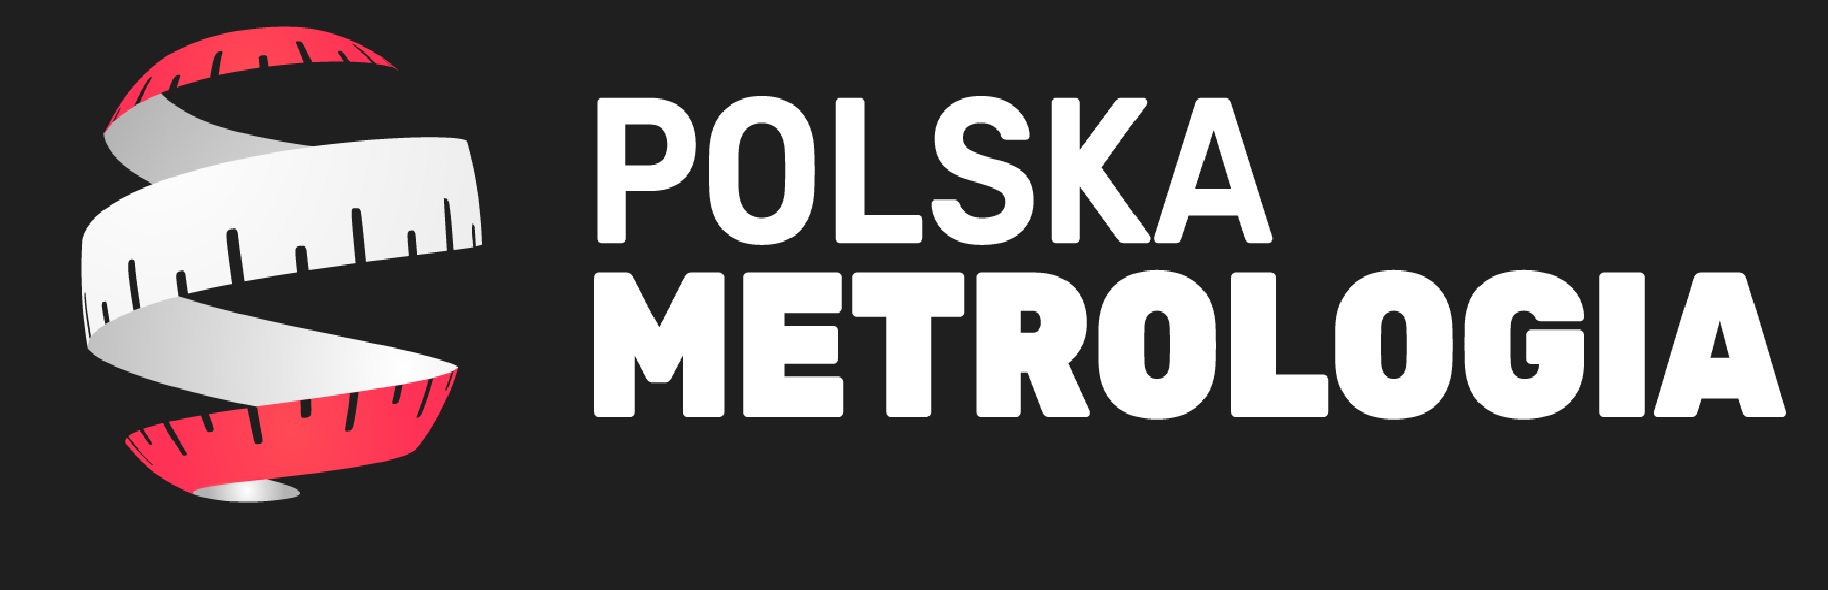 polska_metrologia.jpg